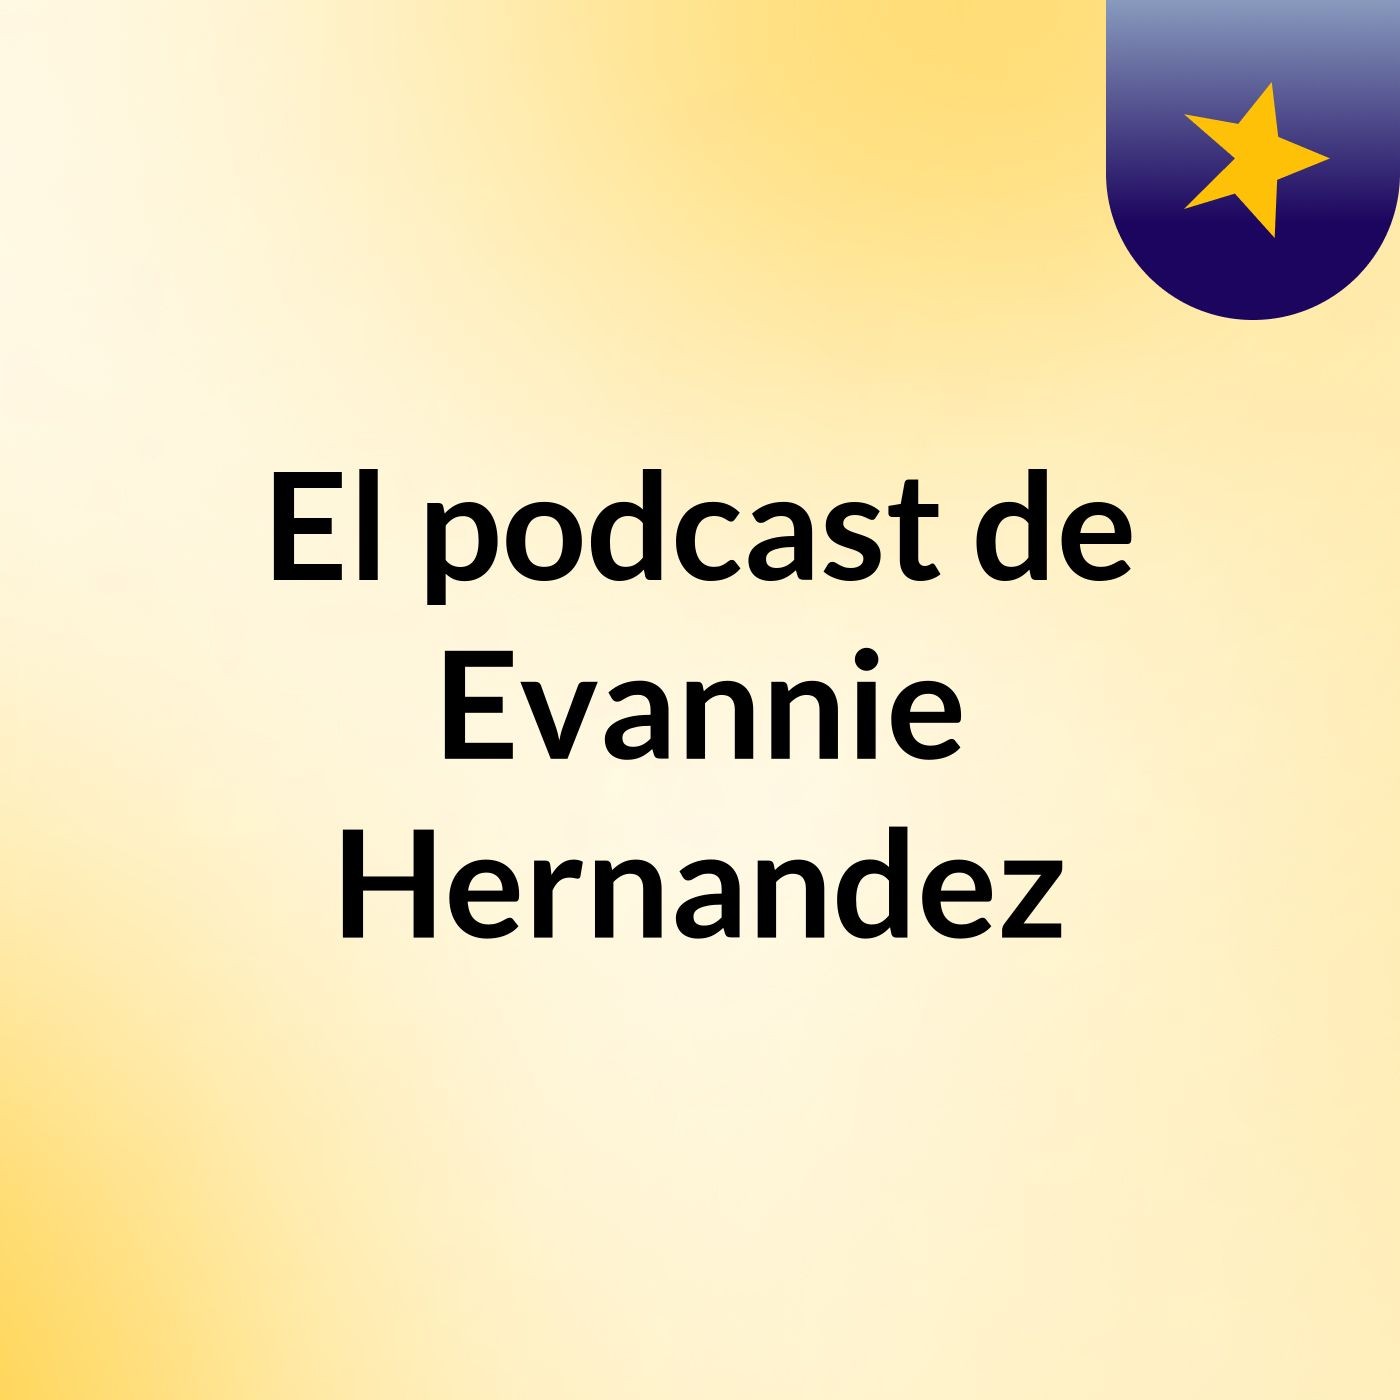 El podcast de Evannie Hernandez